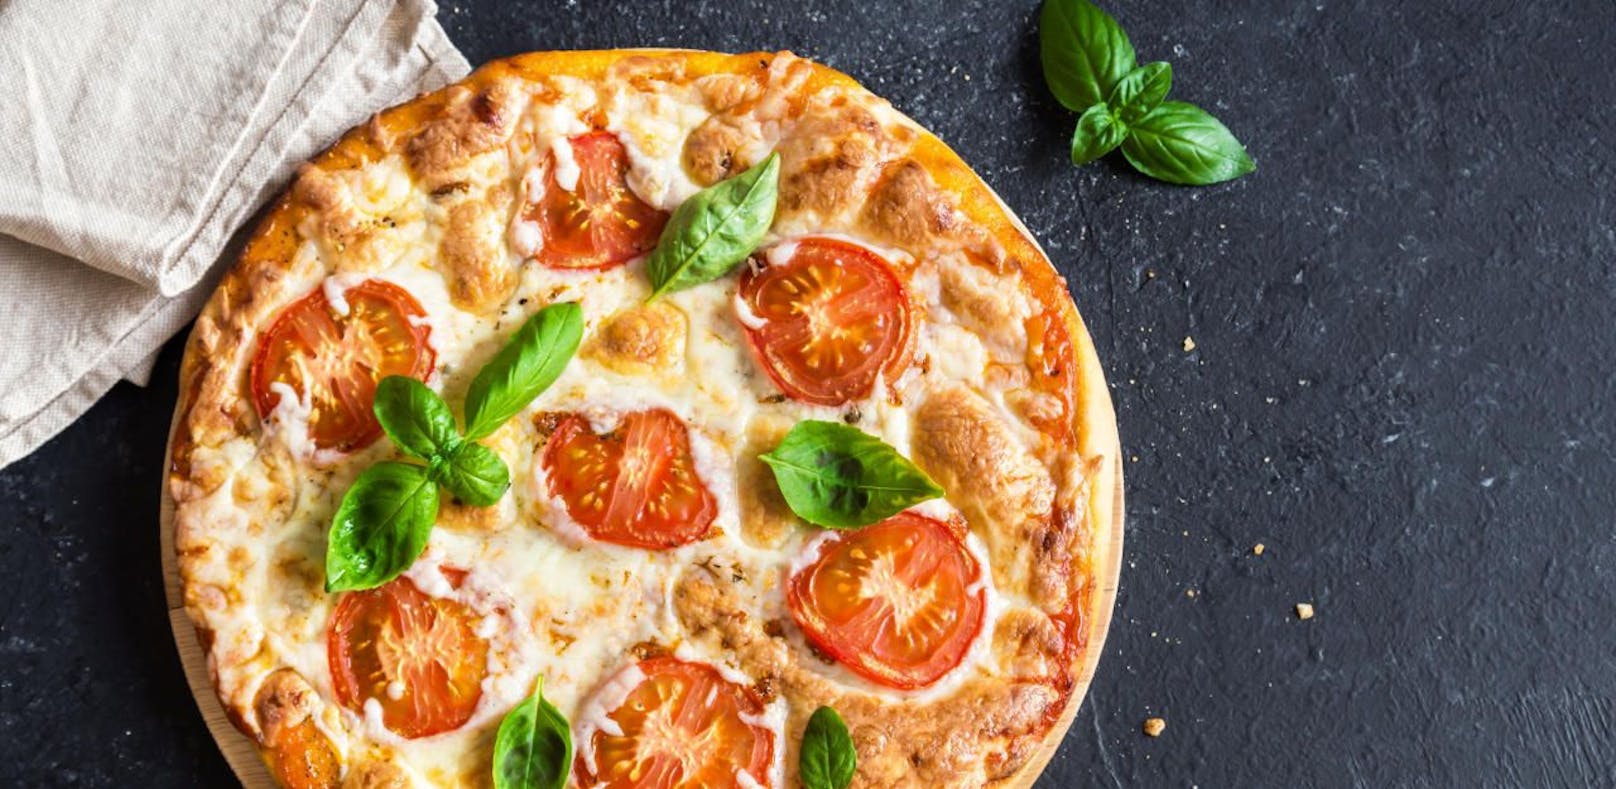 Italiener lieben Pizza ... und wollen sie zum Kulturerbe erklären lassen. (Symbolbild)